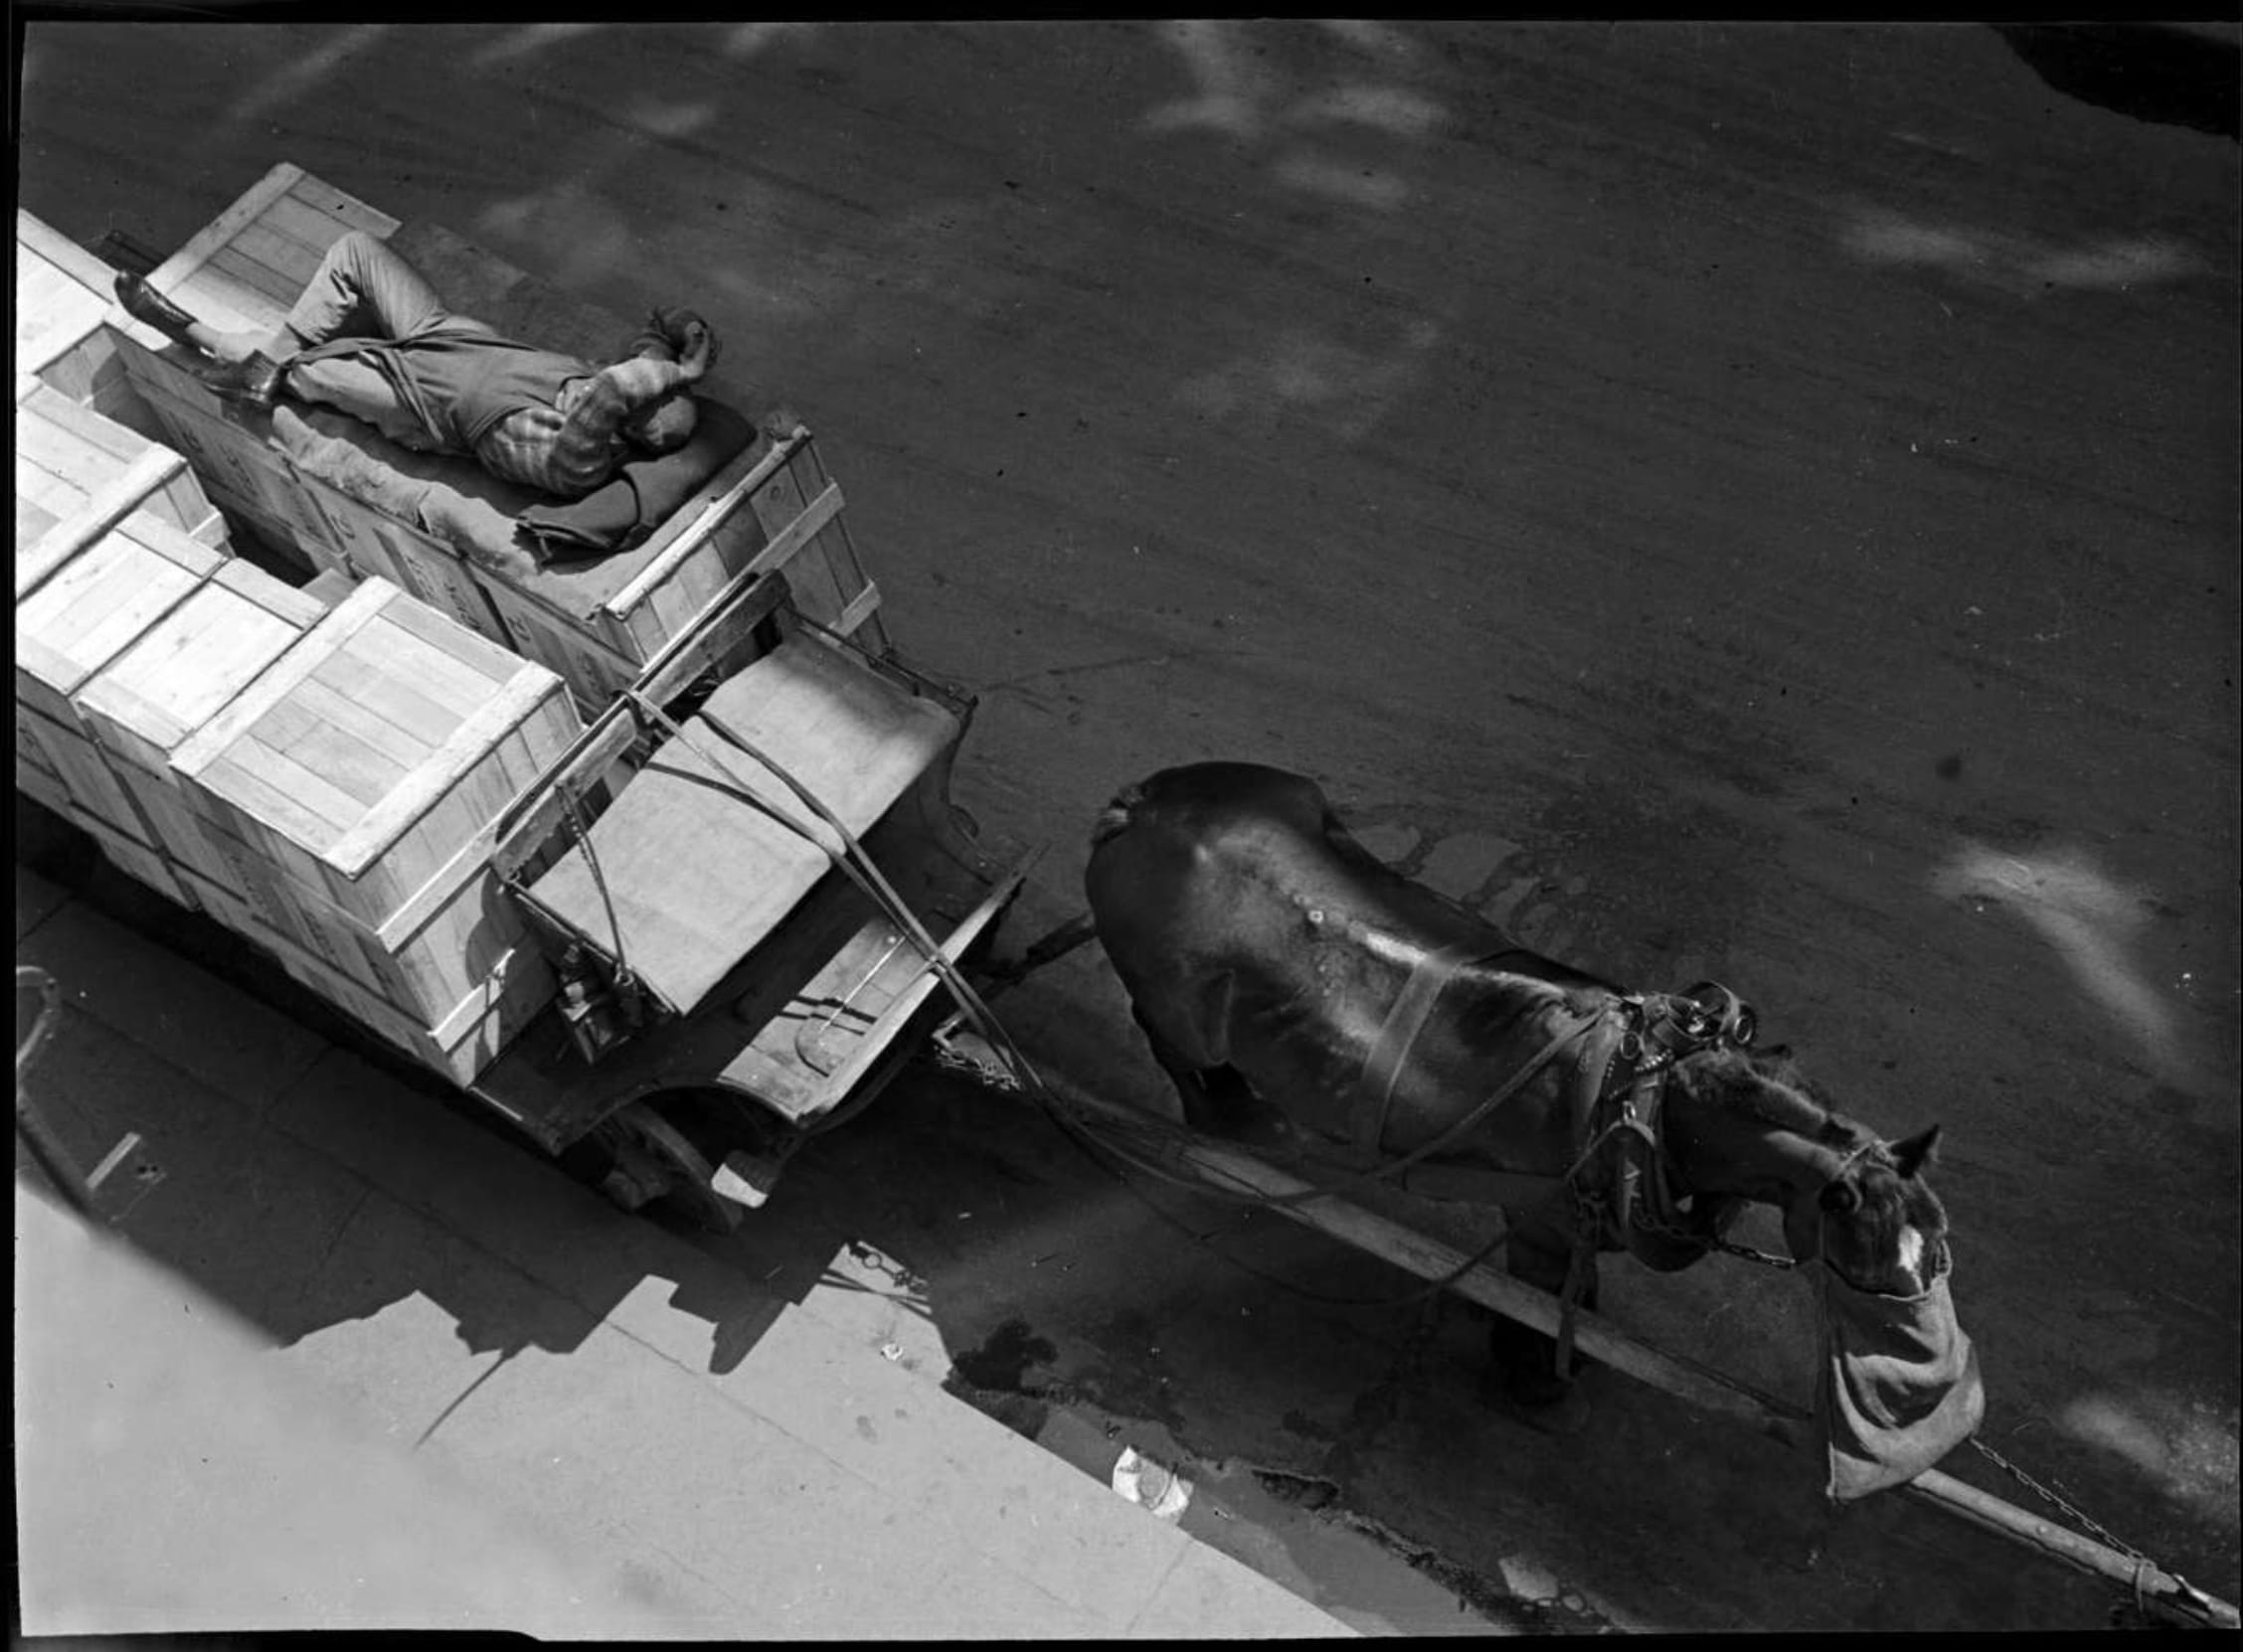 2a. Imre Kinszki, <i>Pihenő szállítómunkás fekszik egy lovas kocsi szállítmányán</i> (“A deliveryman rests, lying on the load of his cart”), 1934  © FSZEK